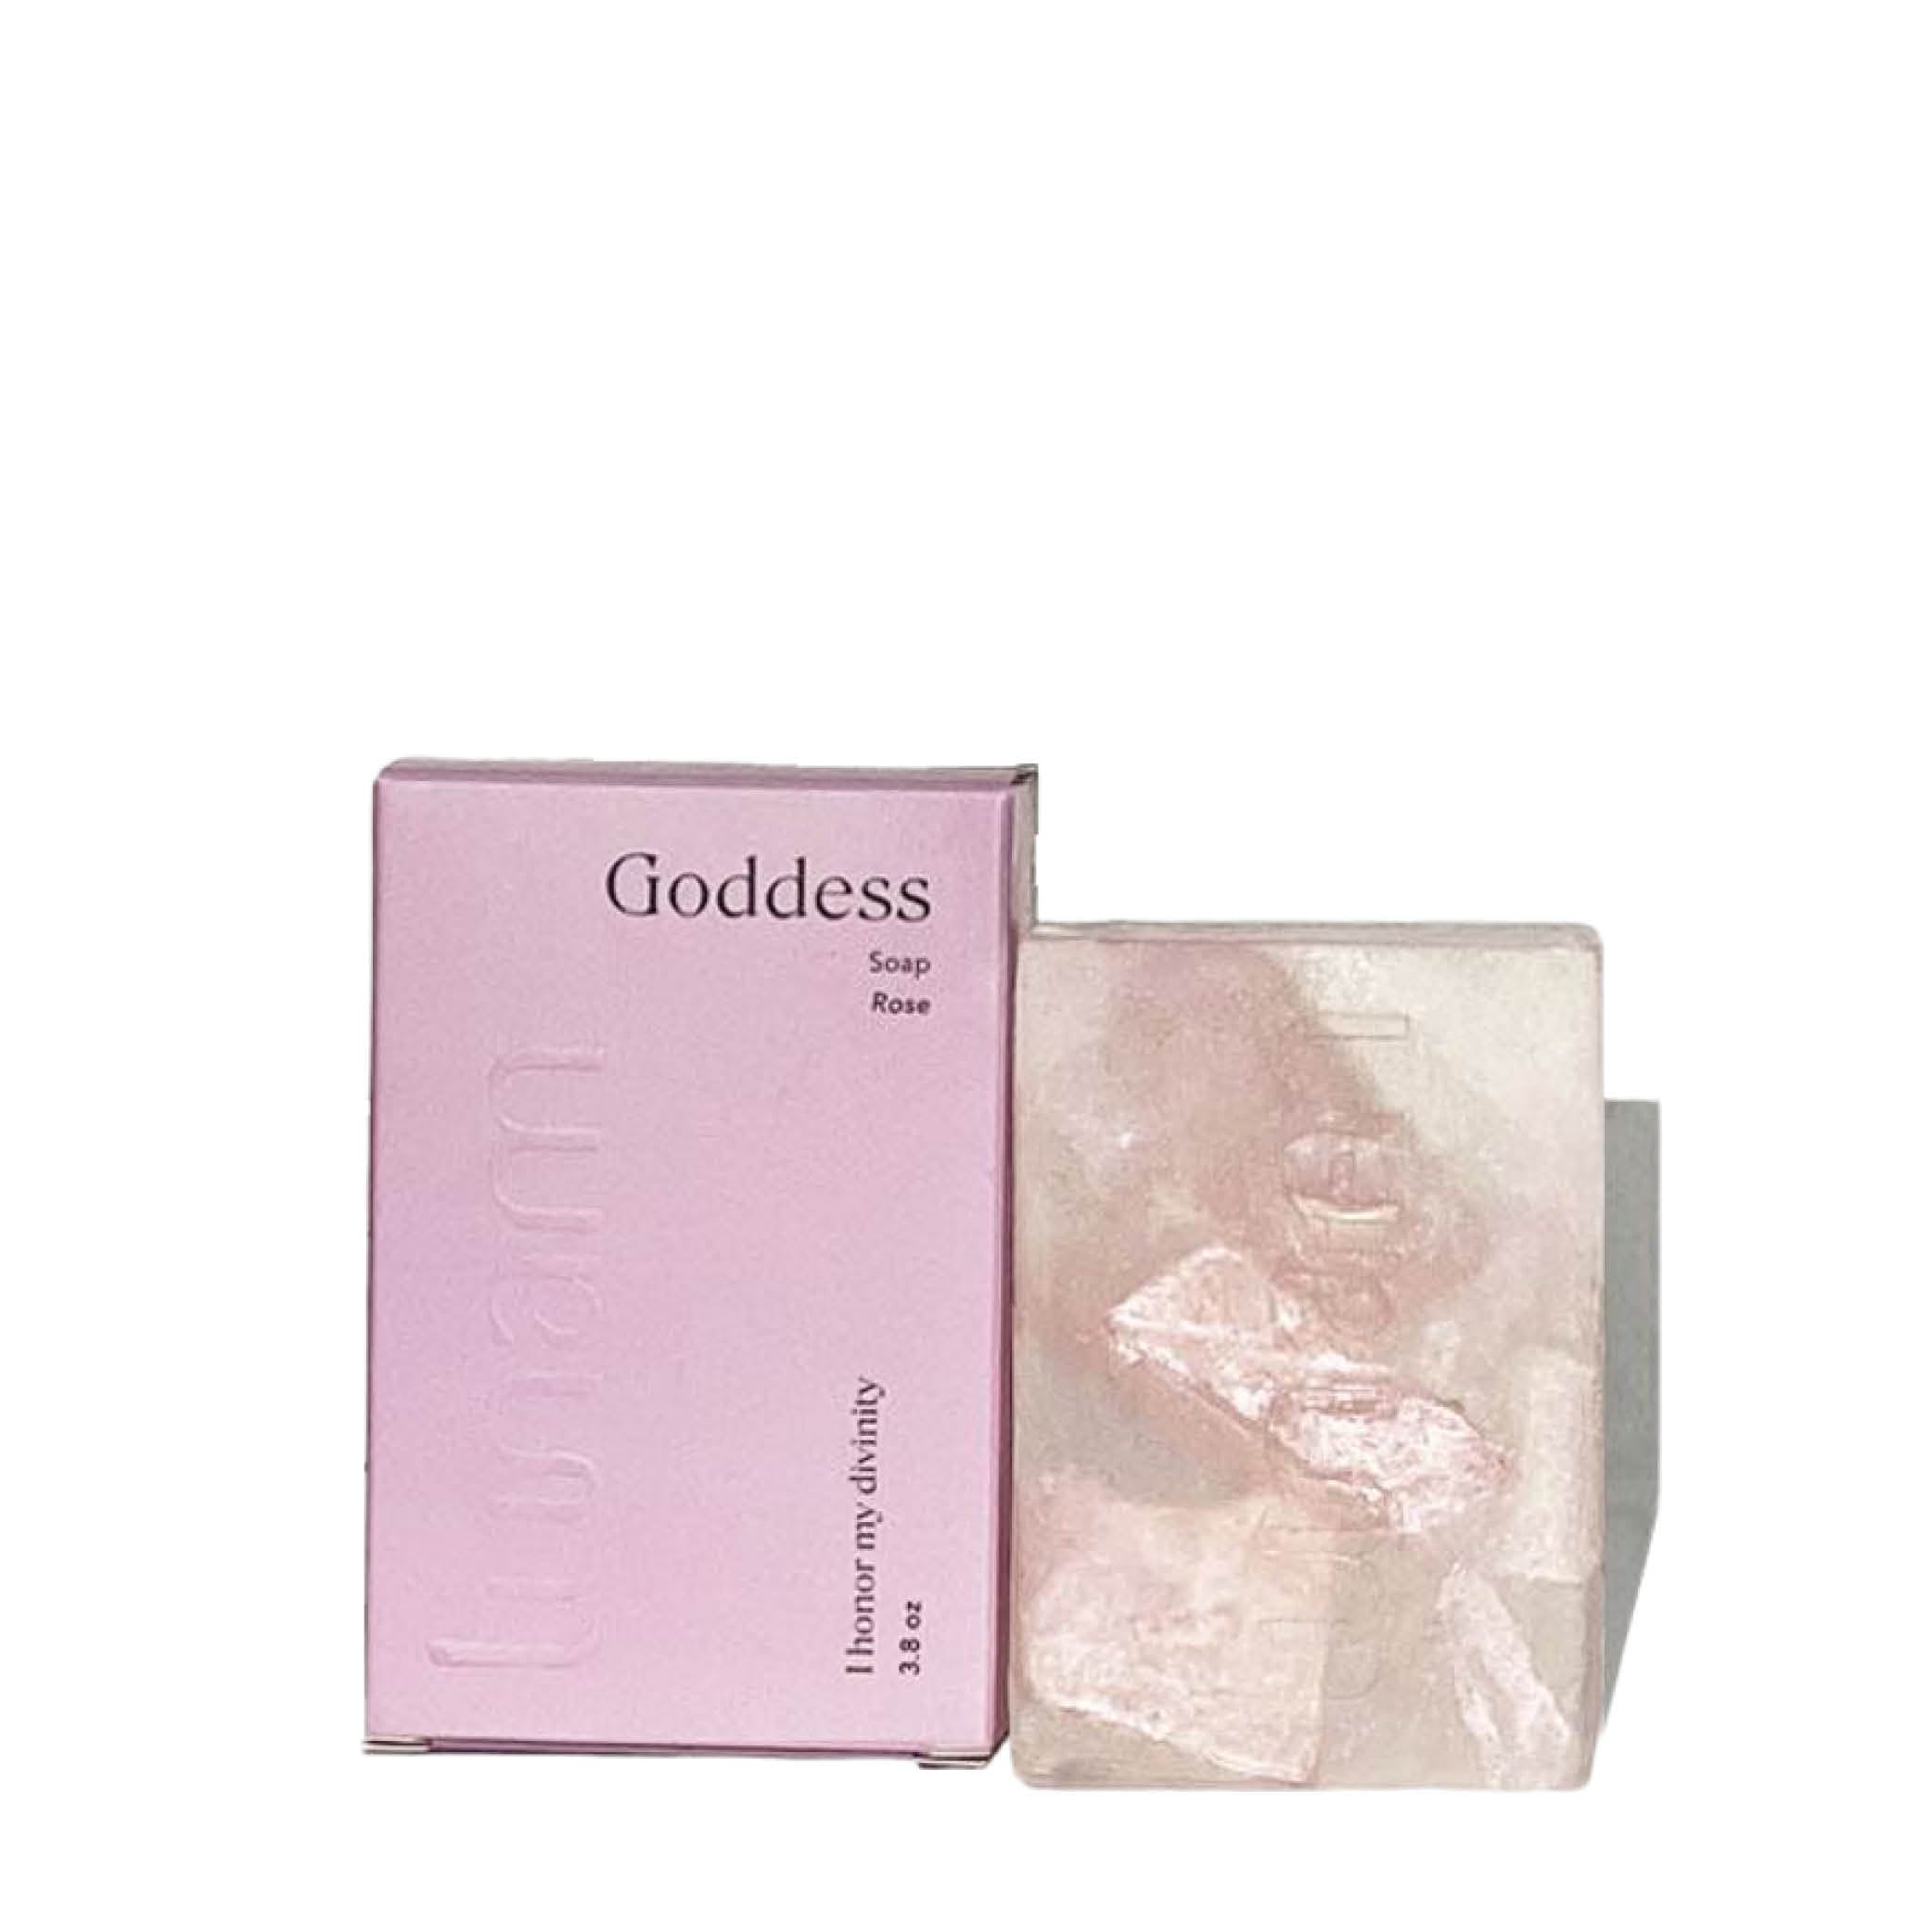 Goddess Soap Bar Rose